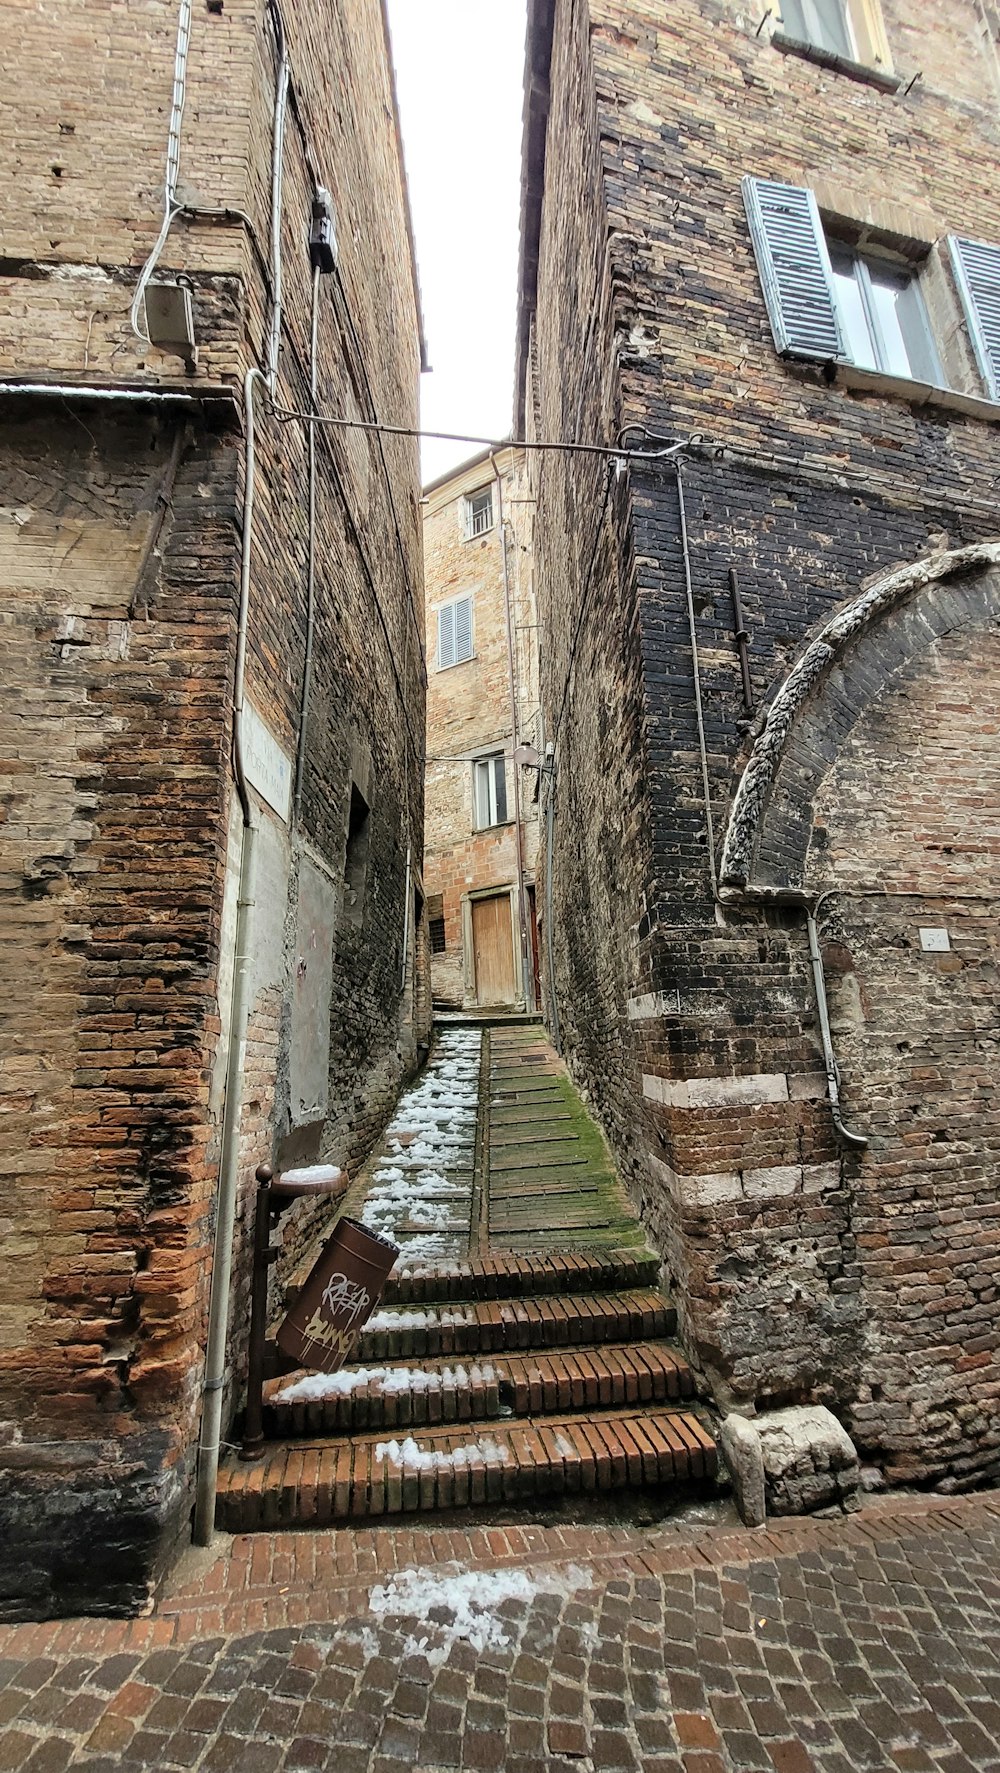 a narrow alleyway between two brick buildings